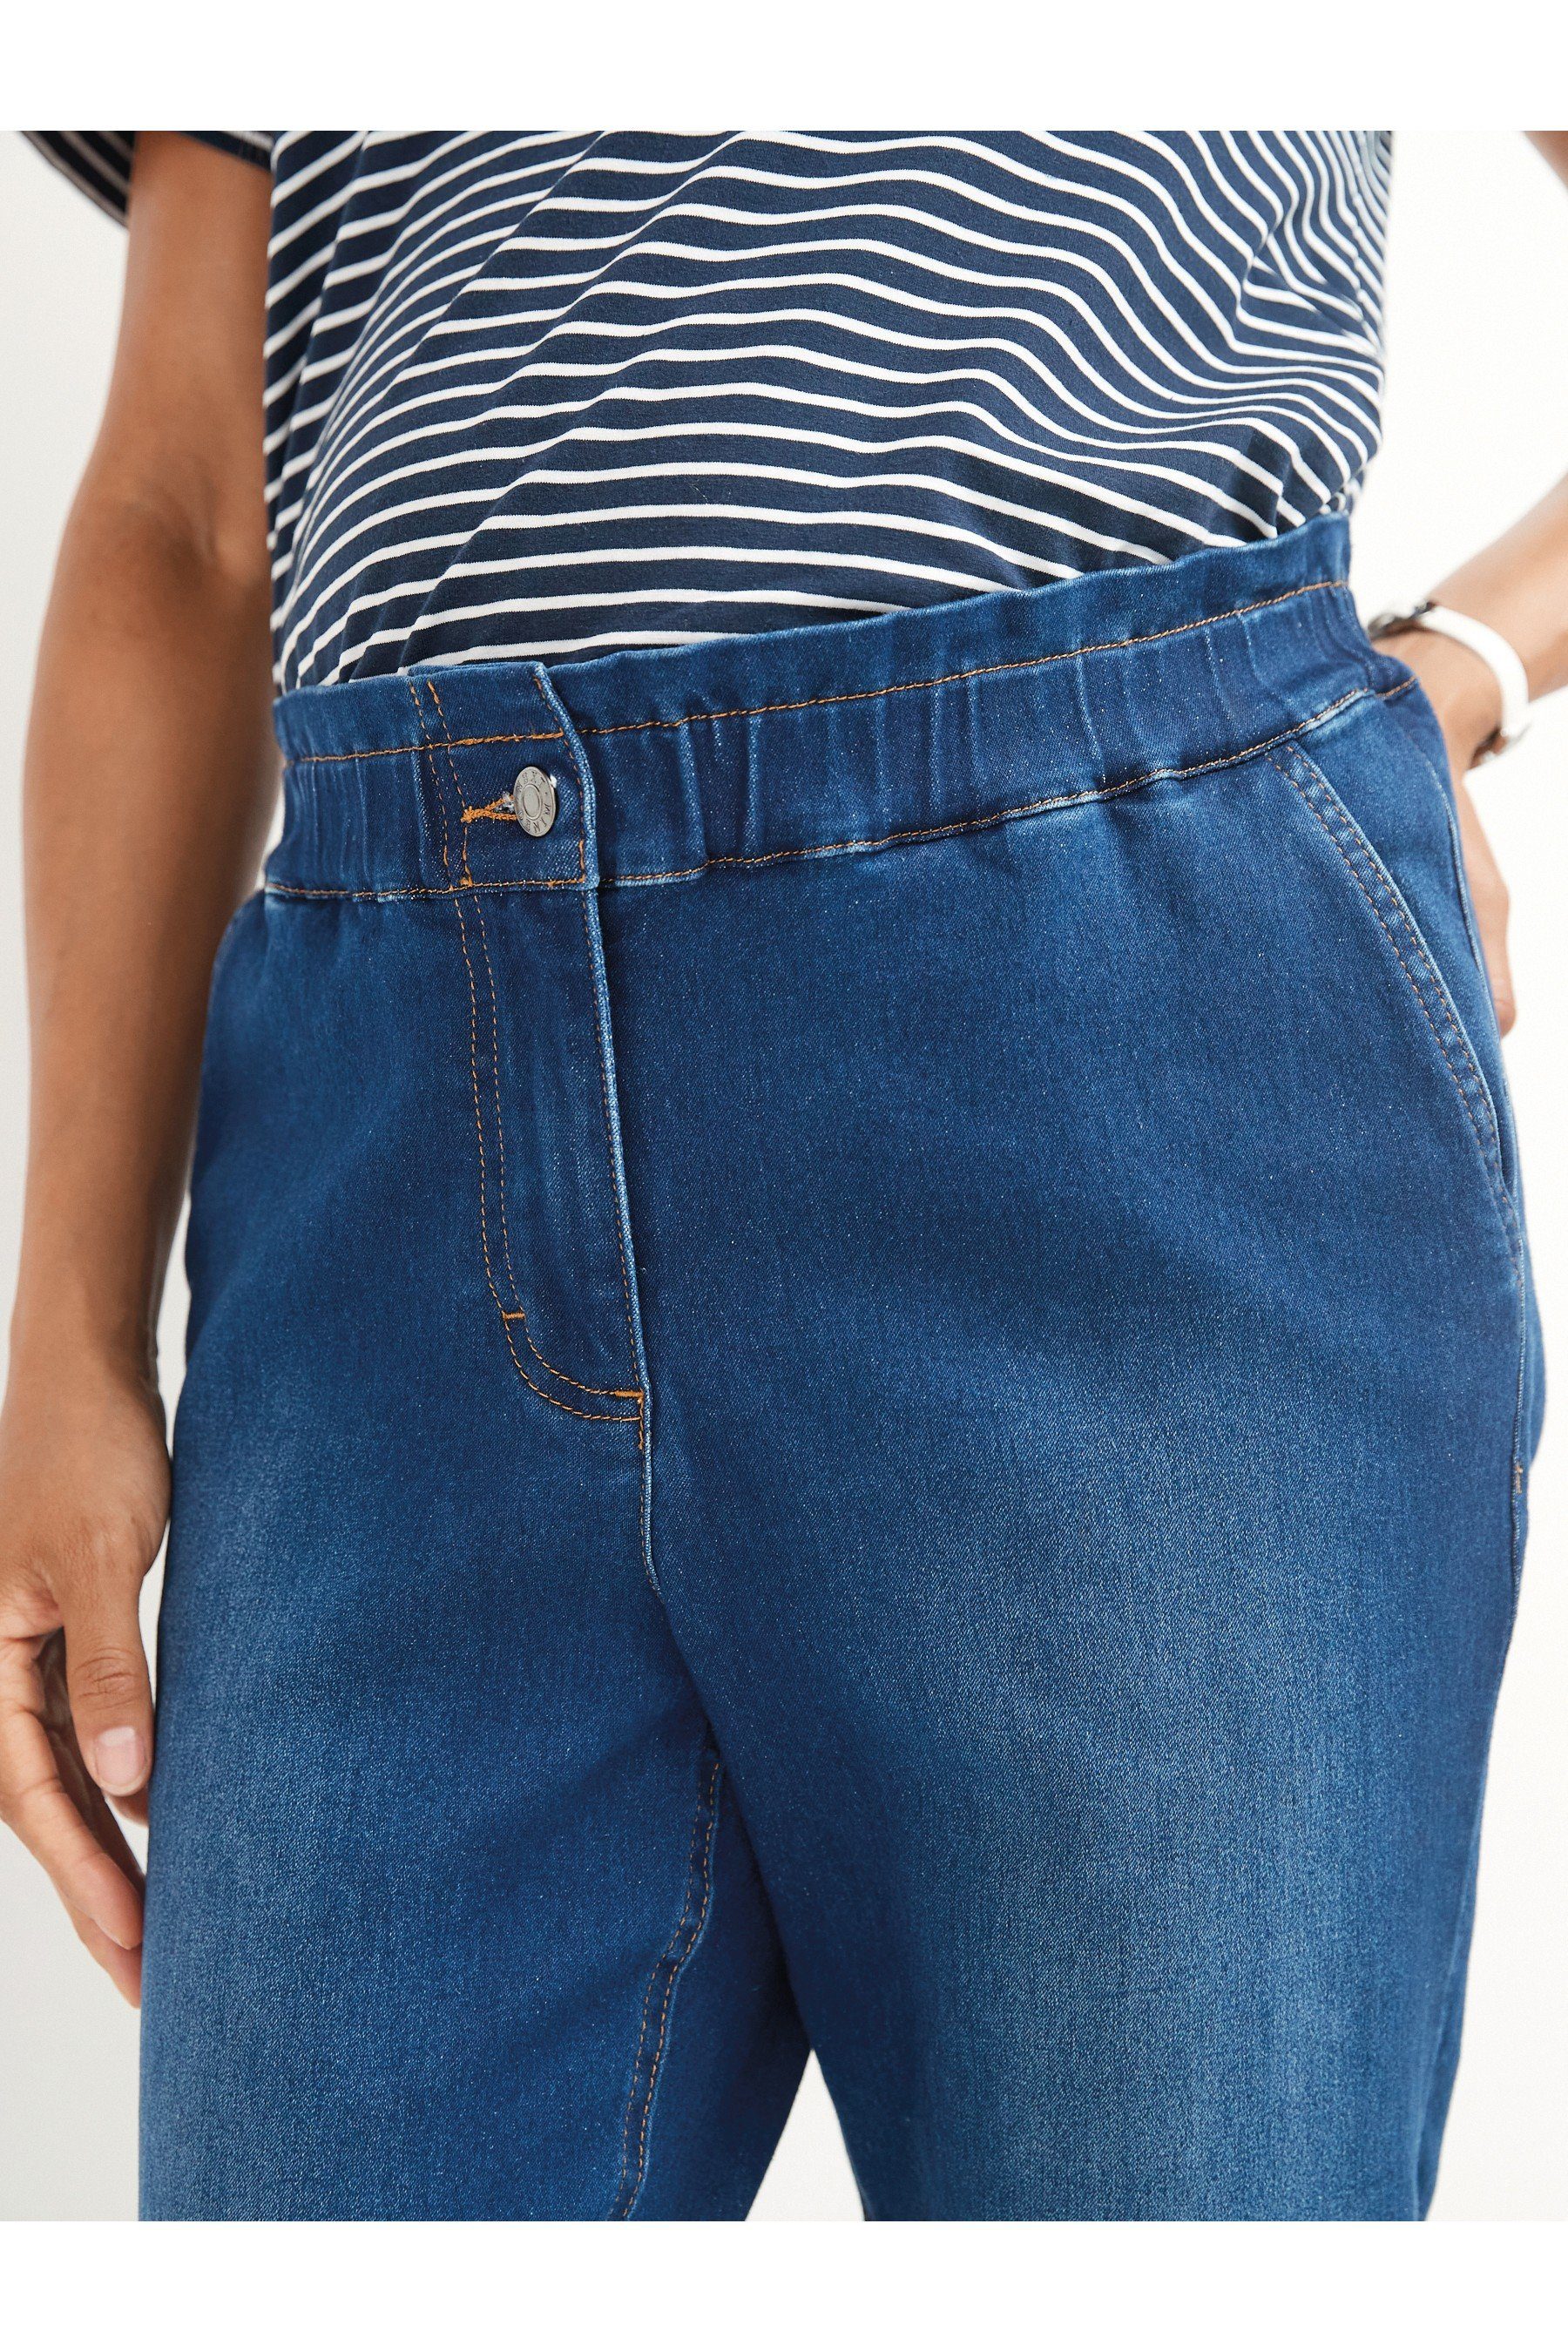 Damen Umstandsmode Next Umstandsjeans Jeans mit Elastikbund - Normal/Lang